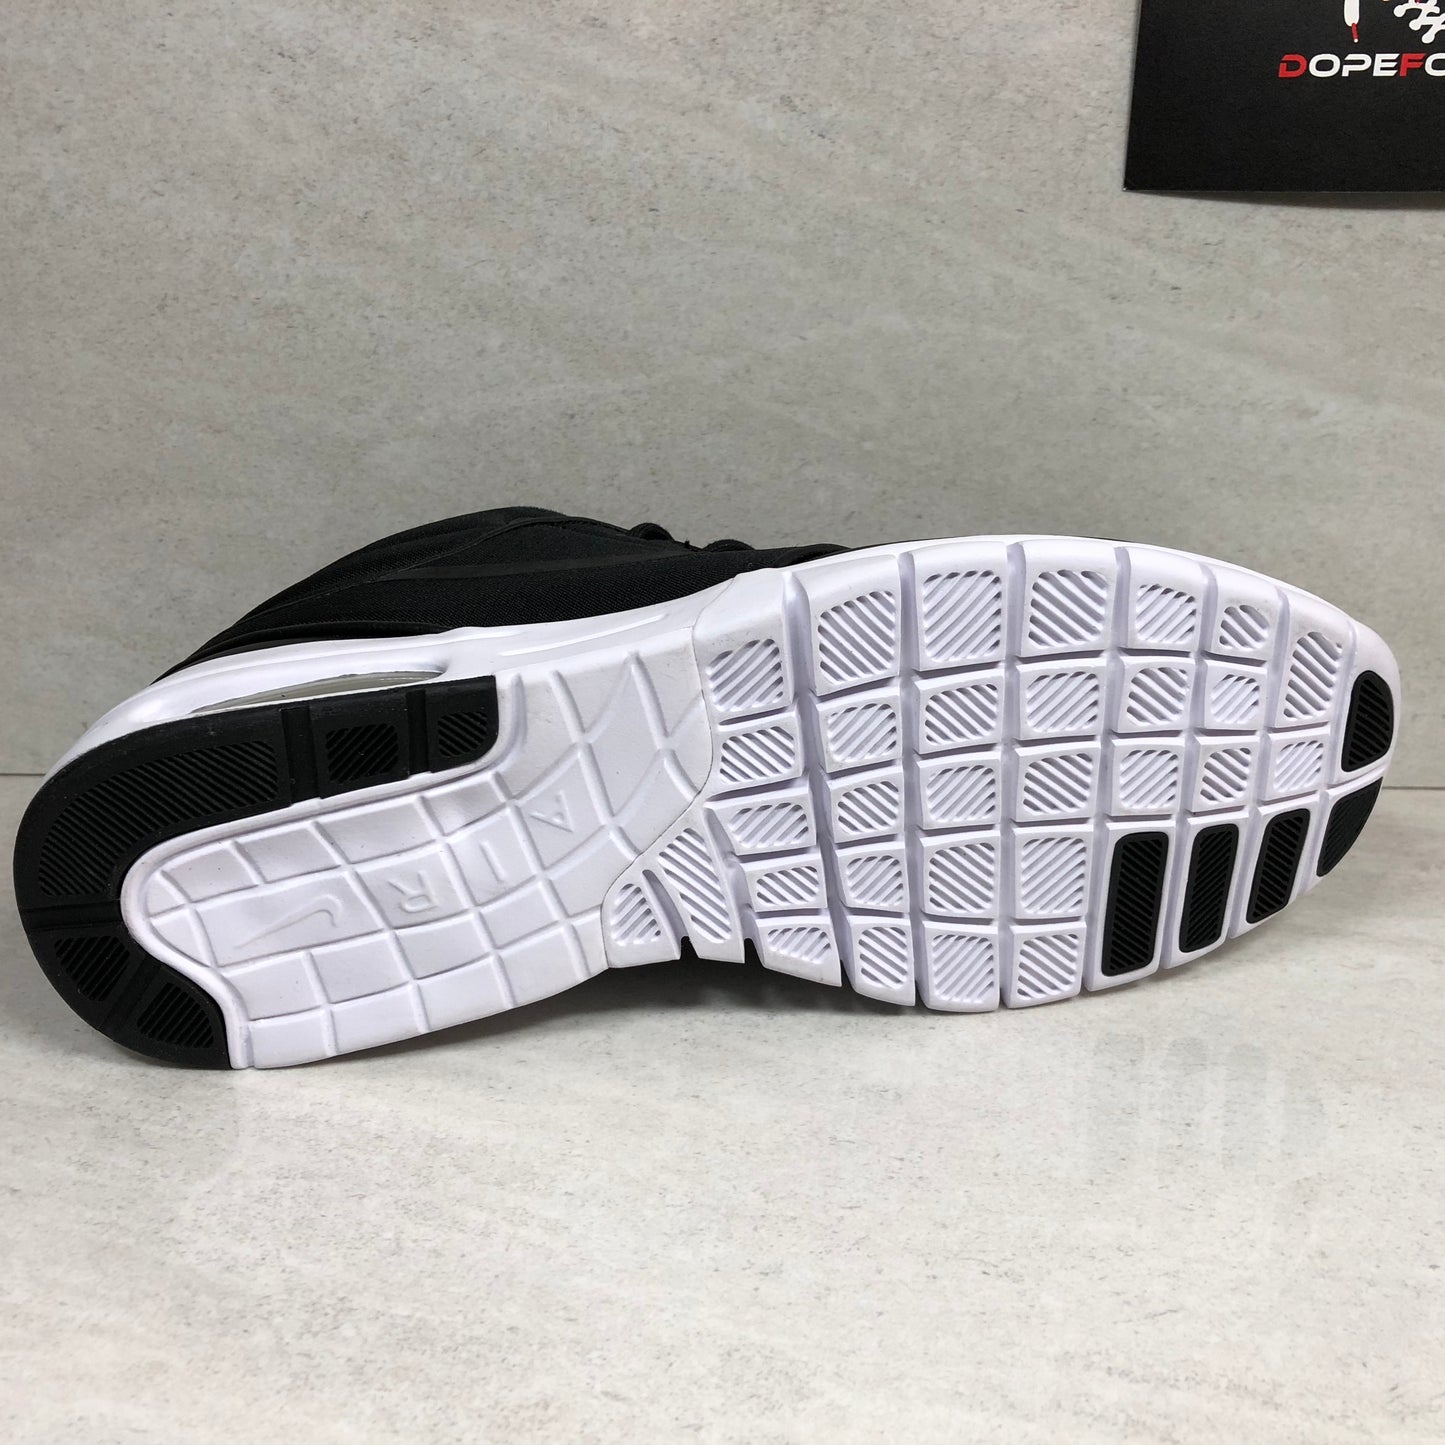 Nike Stefan Janoski Max Mid - 807507 001 - Size  9.5 Black/White